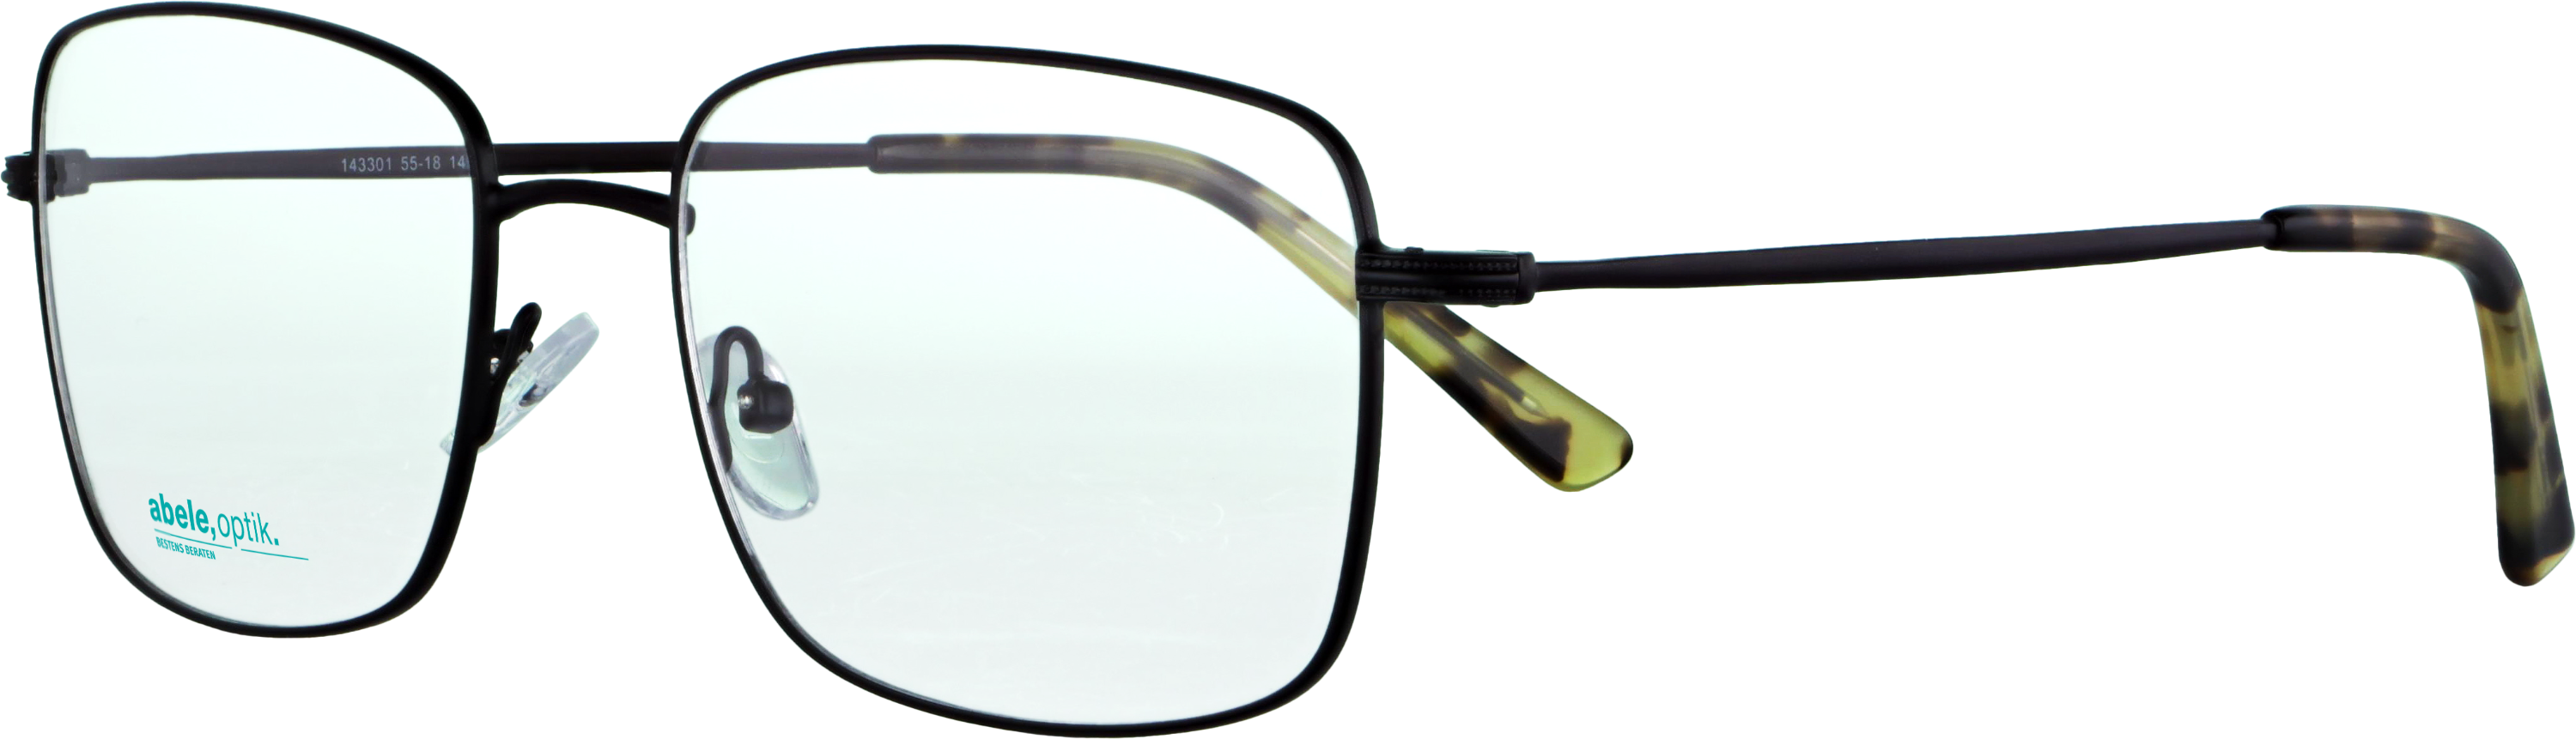 Das Bild zeigt die Korrektionsbrille 143301 von der Marke Abele Optik in schwarz.